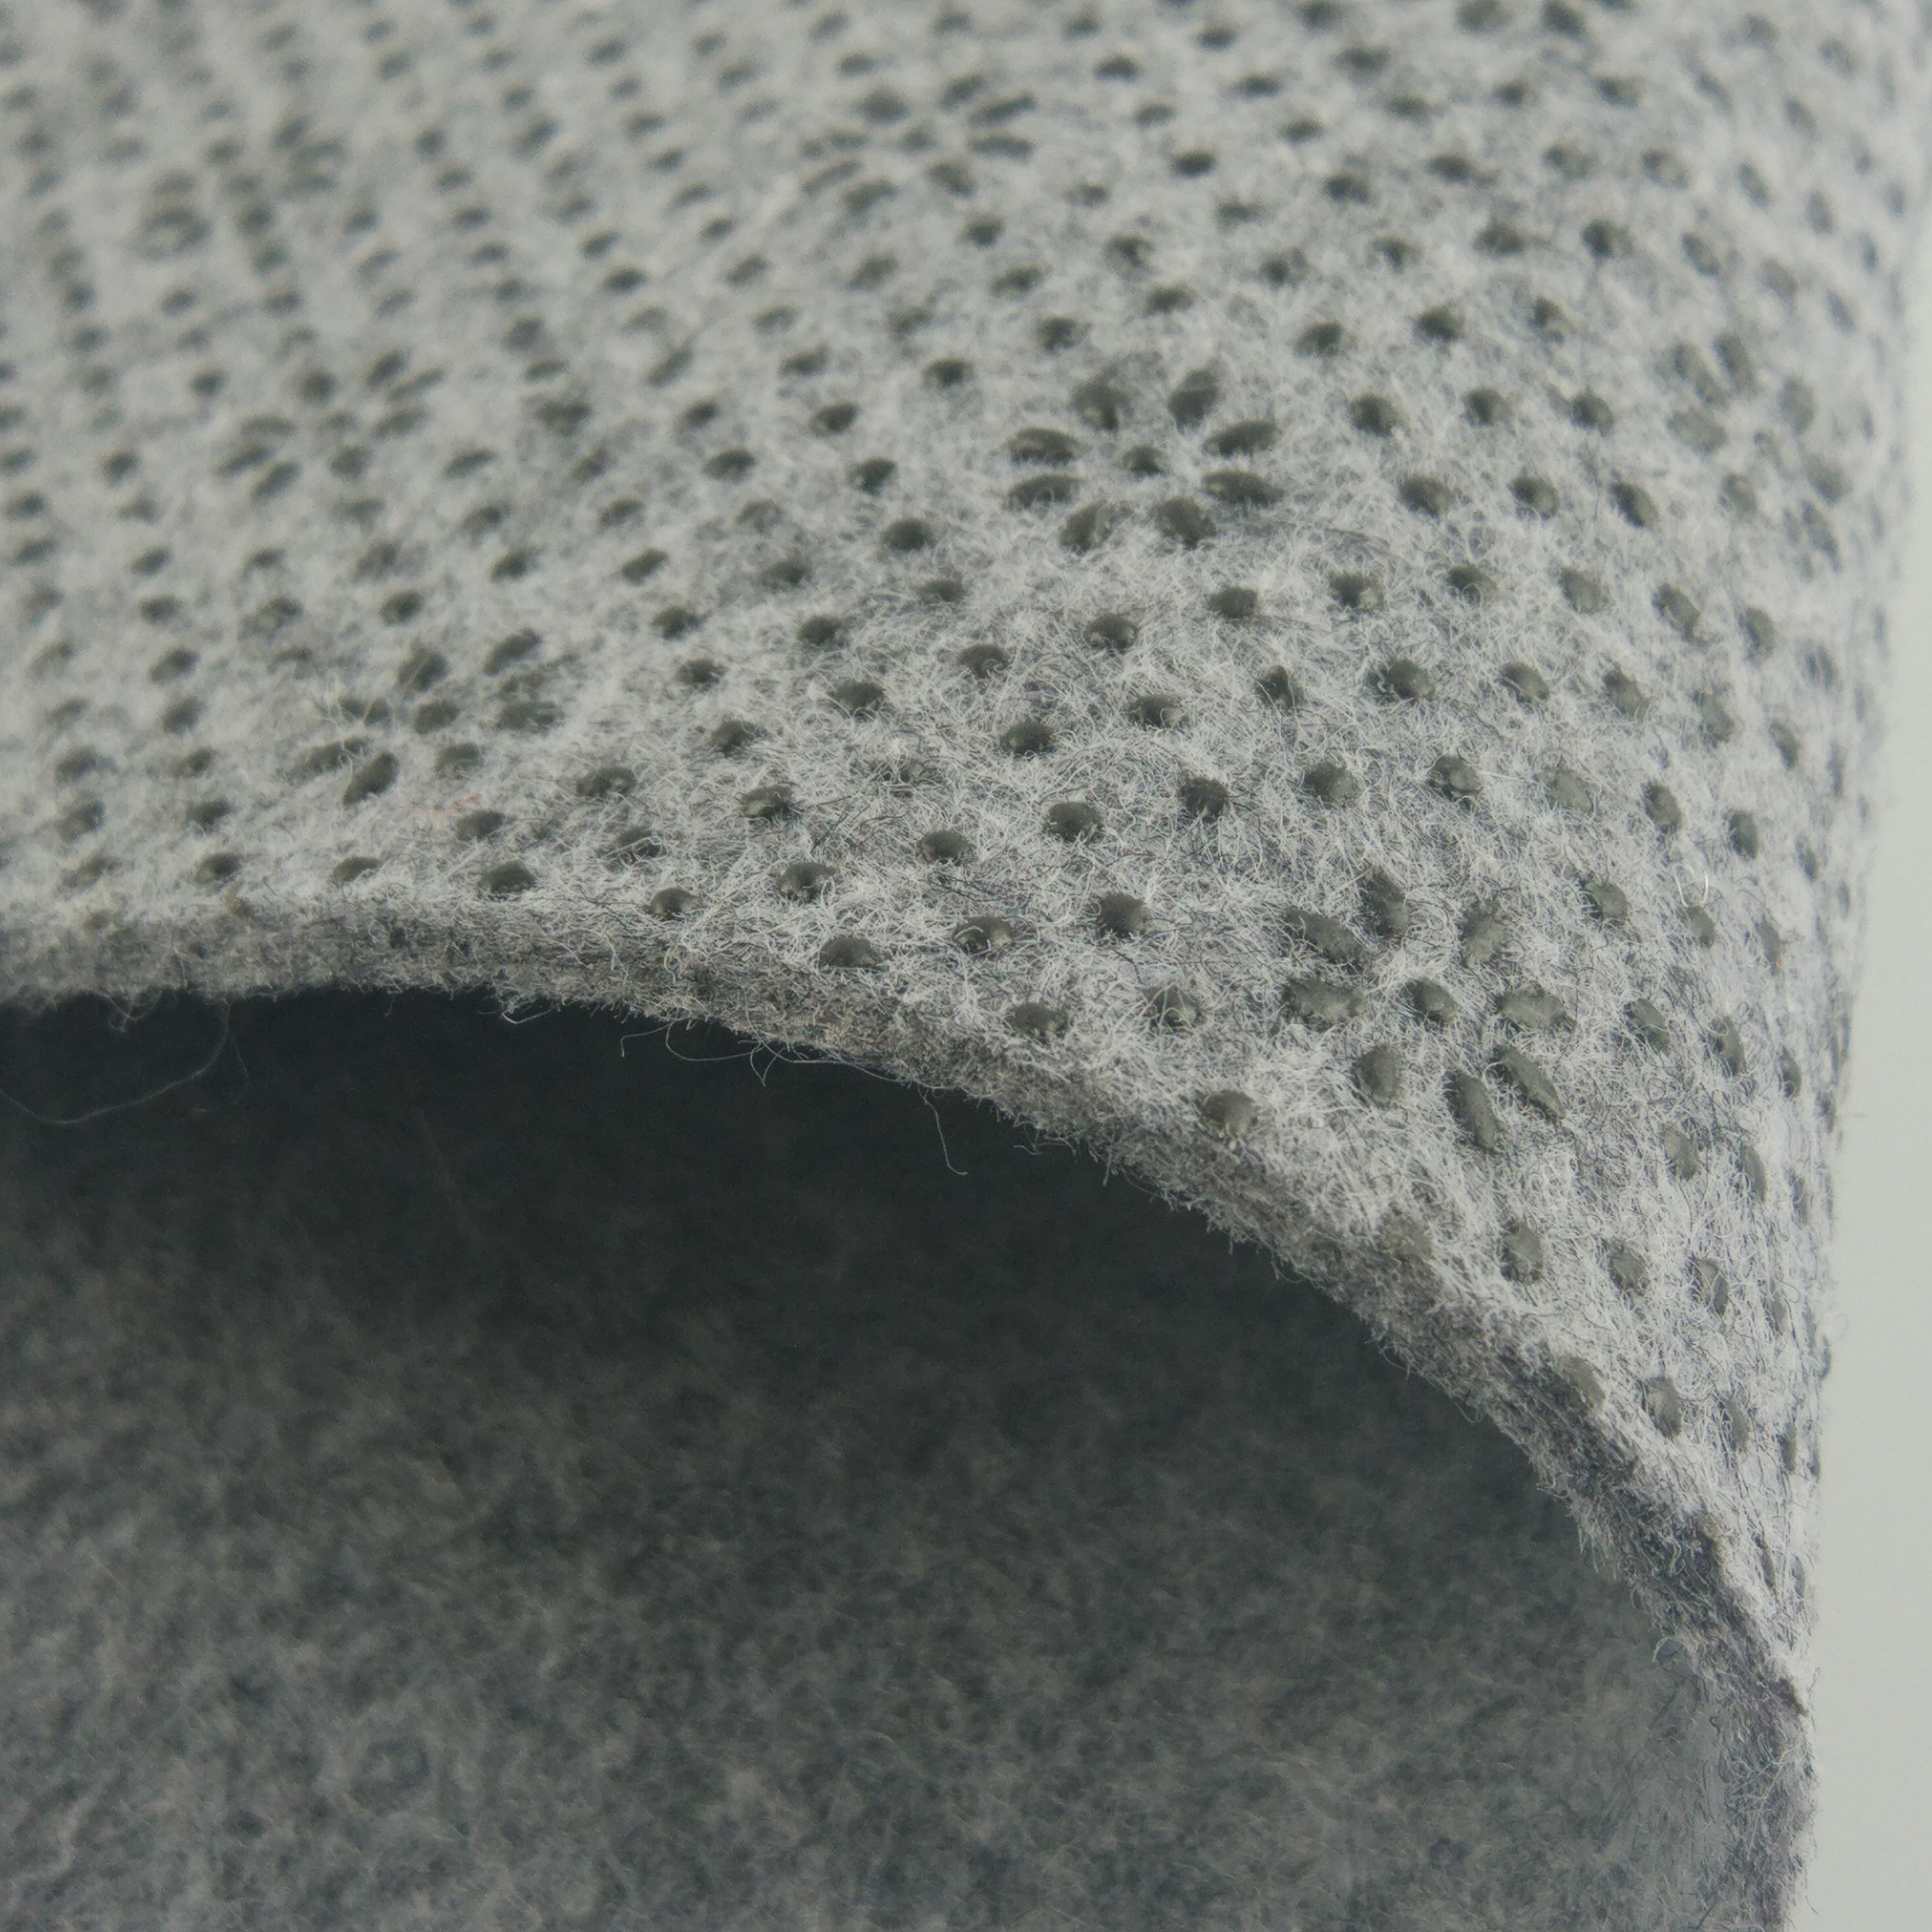 Противоскользящий коврик 8'x10 ', двойная поверхность толщиной 1/3 дюйма войлок + резина. Повышение комфорта и защиты, а также супер сцепление - различные нестандартные размеры